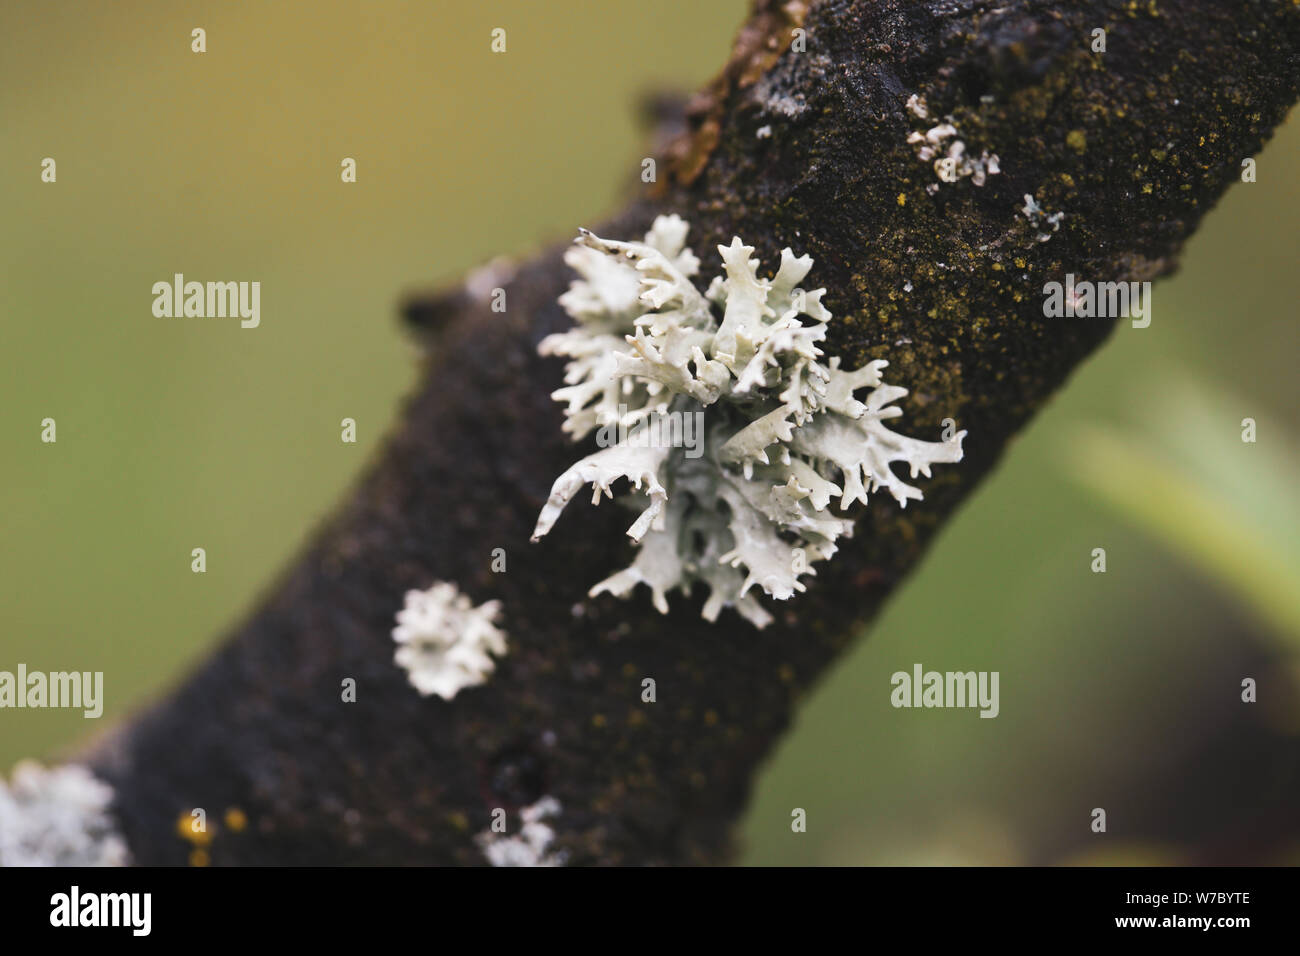 Macro photography with gray tree fungus Stock Photo